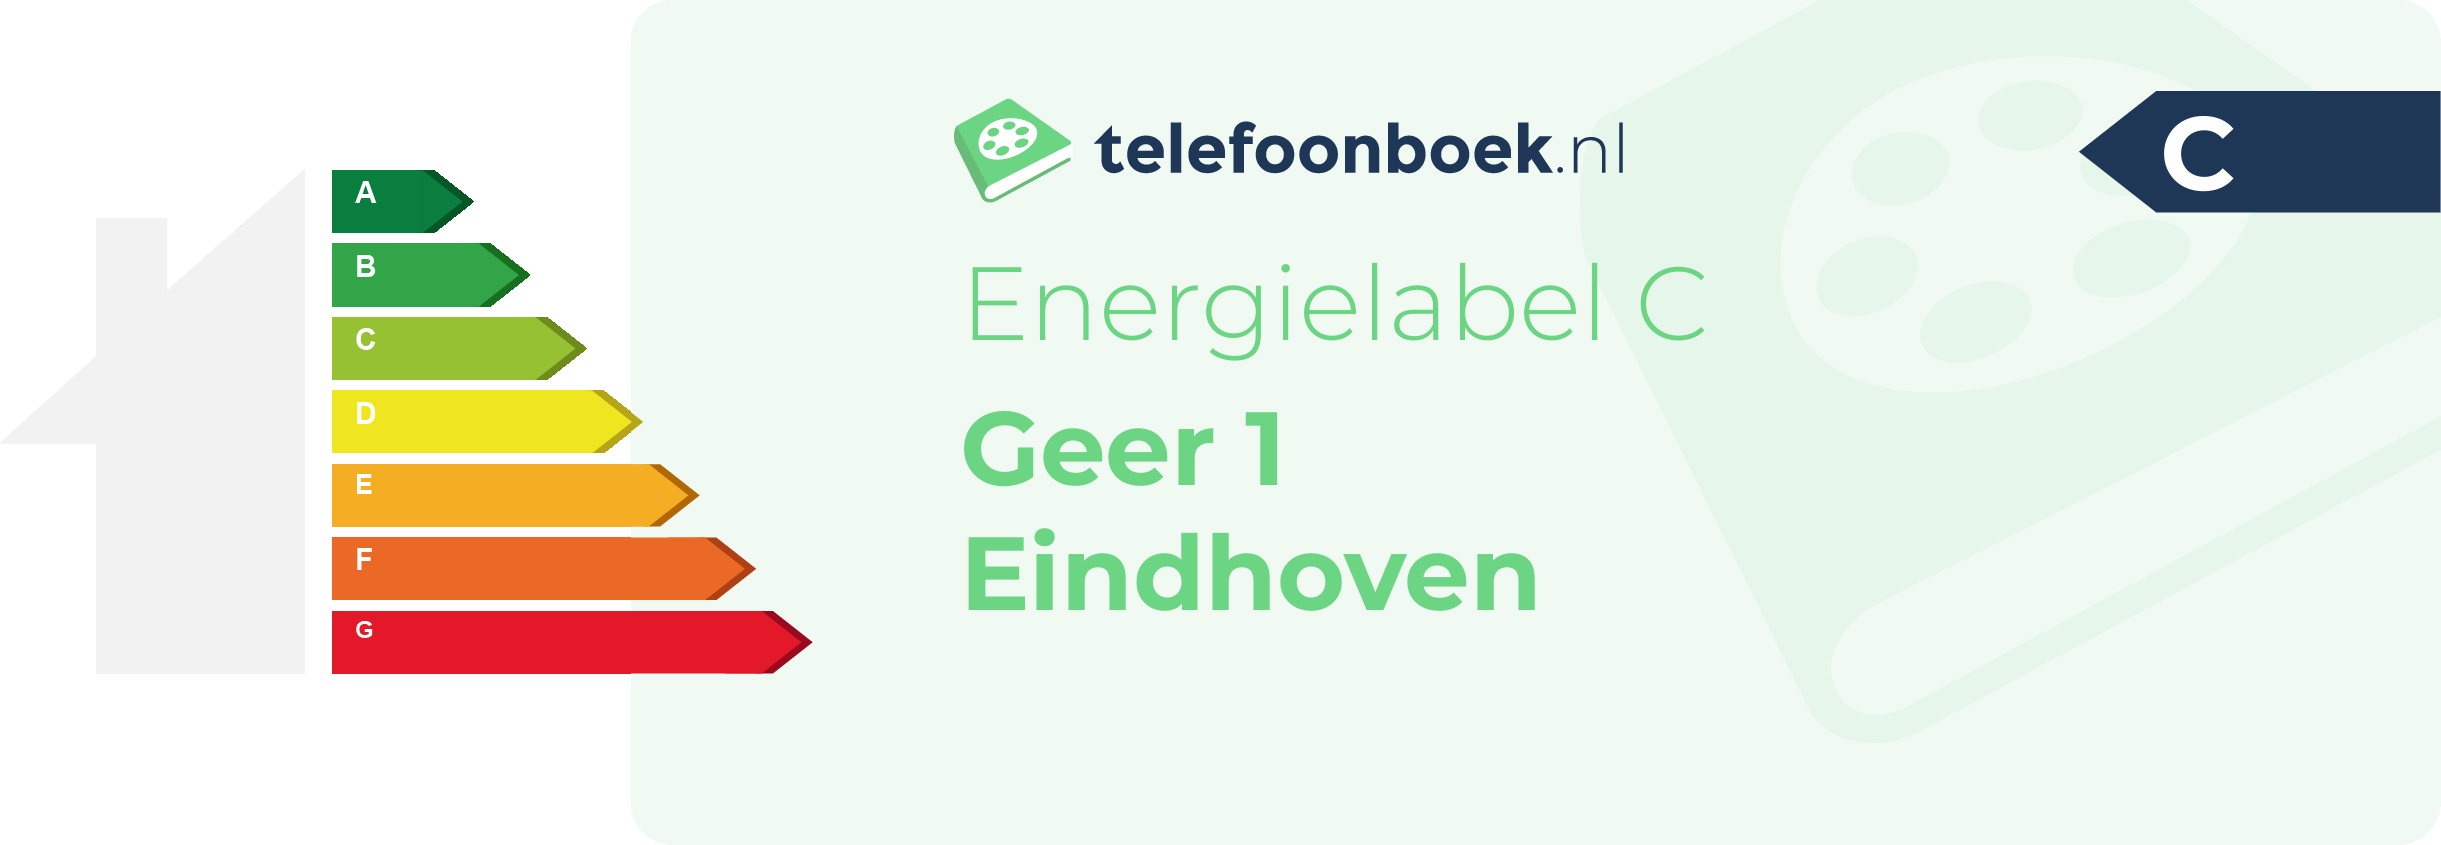 Energielabel Geer 1 Eindhoven